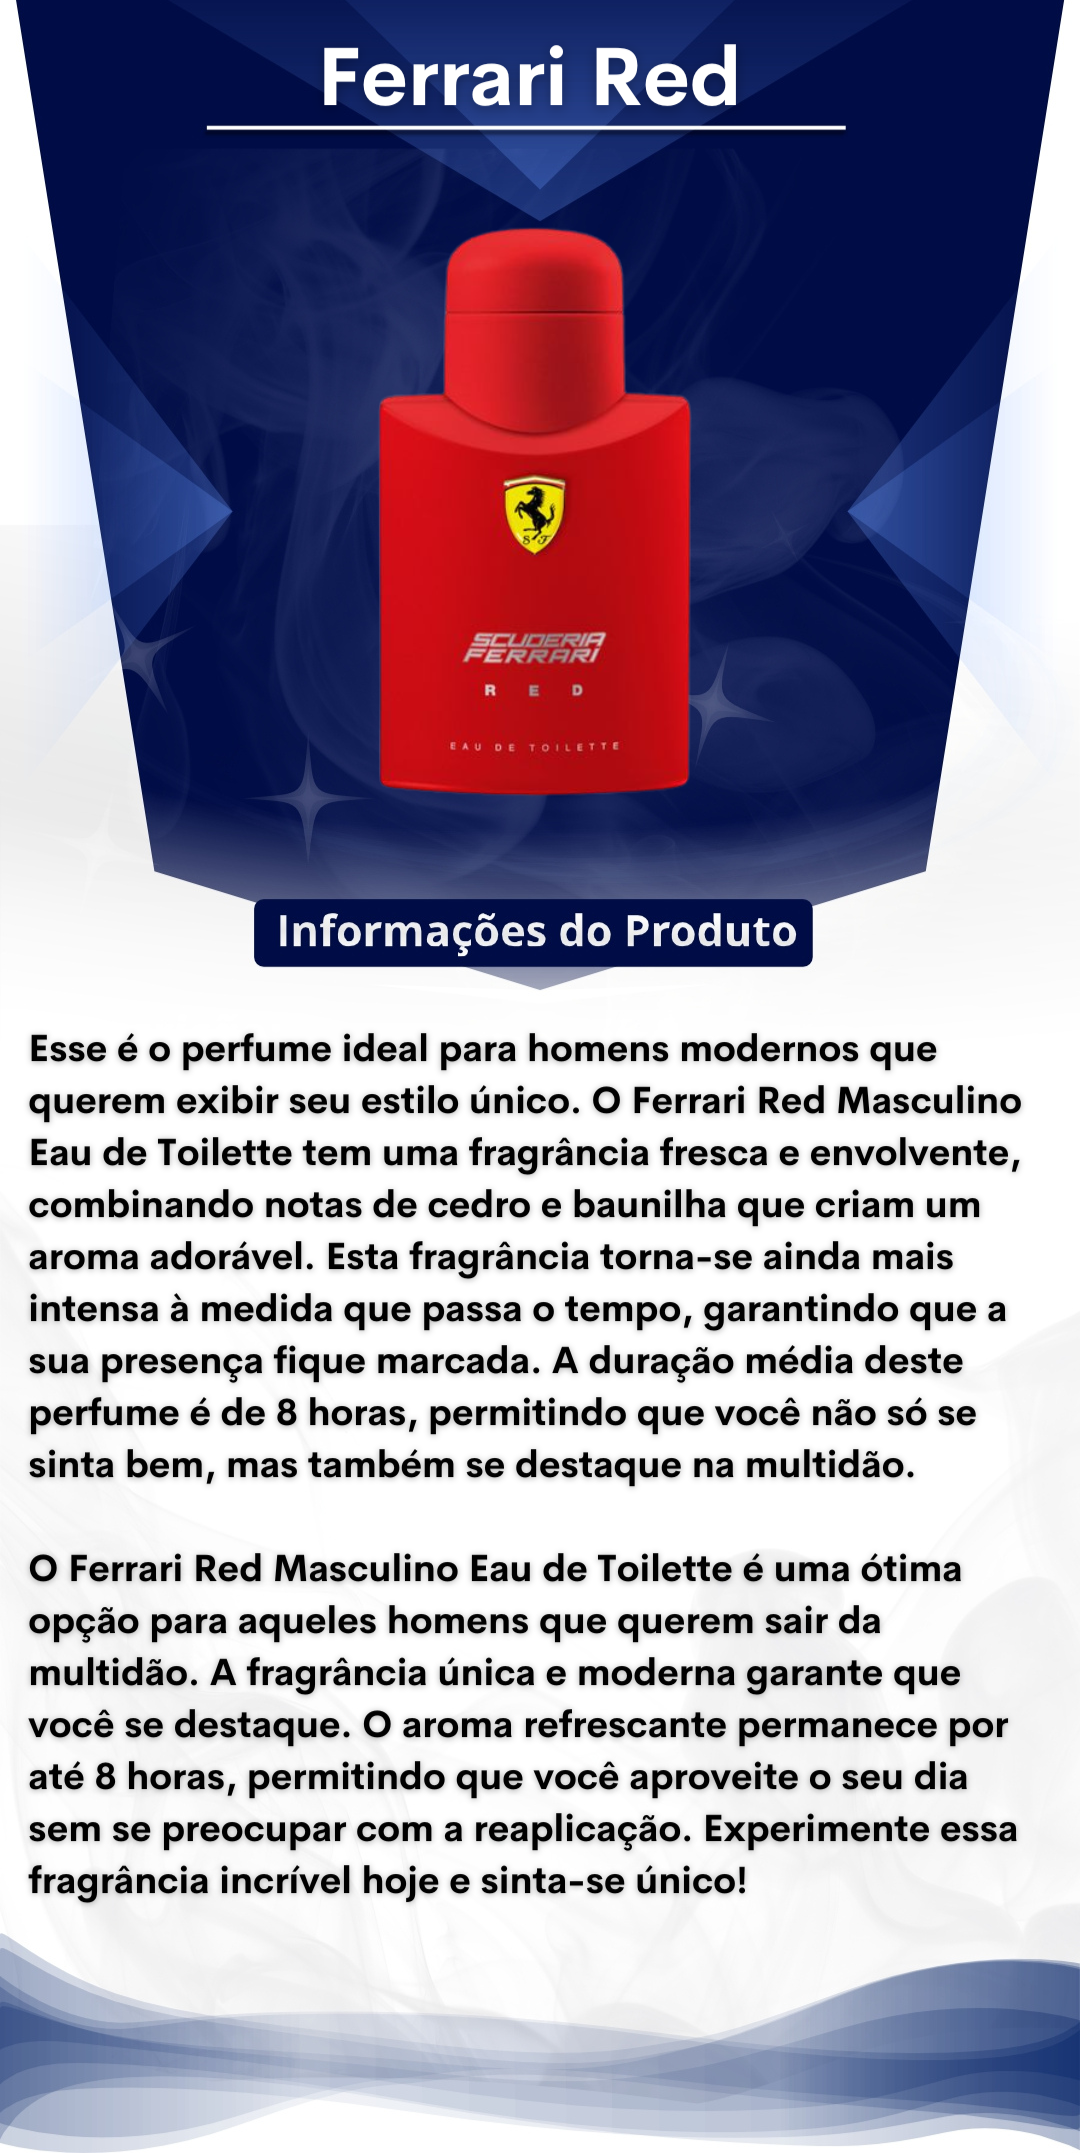 Perfume Ferrari Black 125ml Masculino + Brinde Scuderia Ferrari Red 50ml